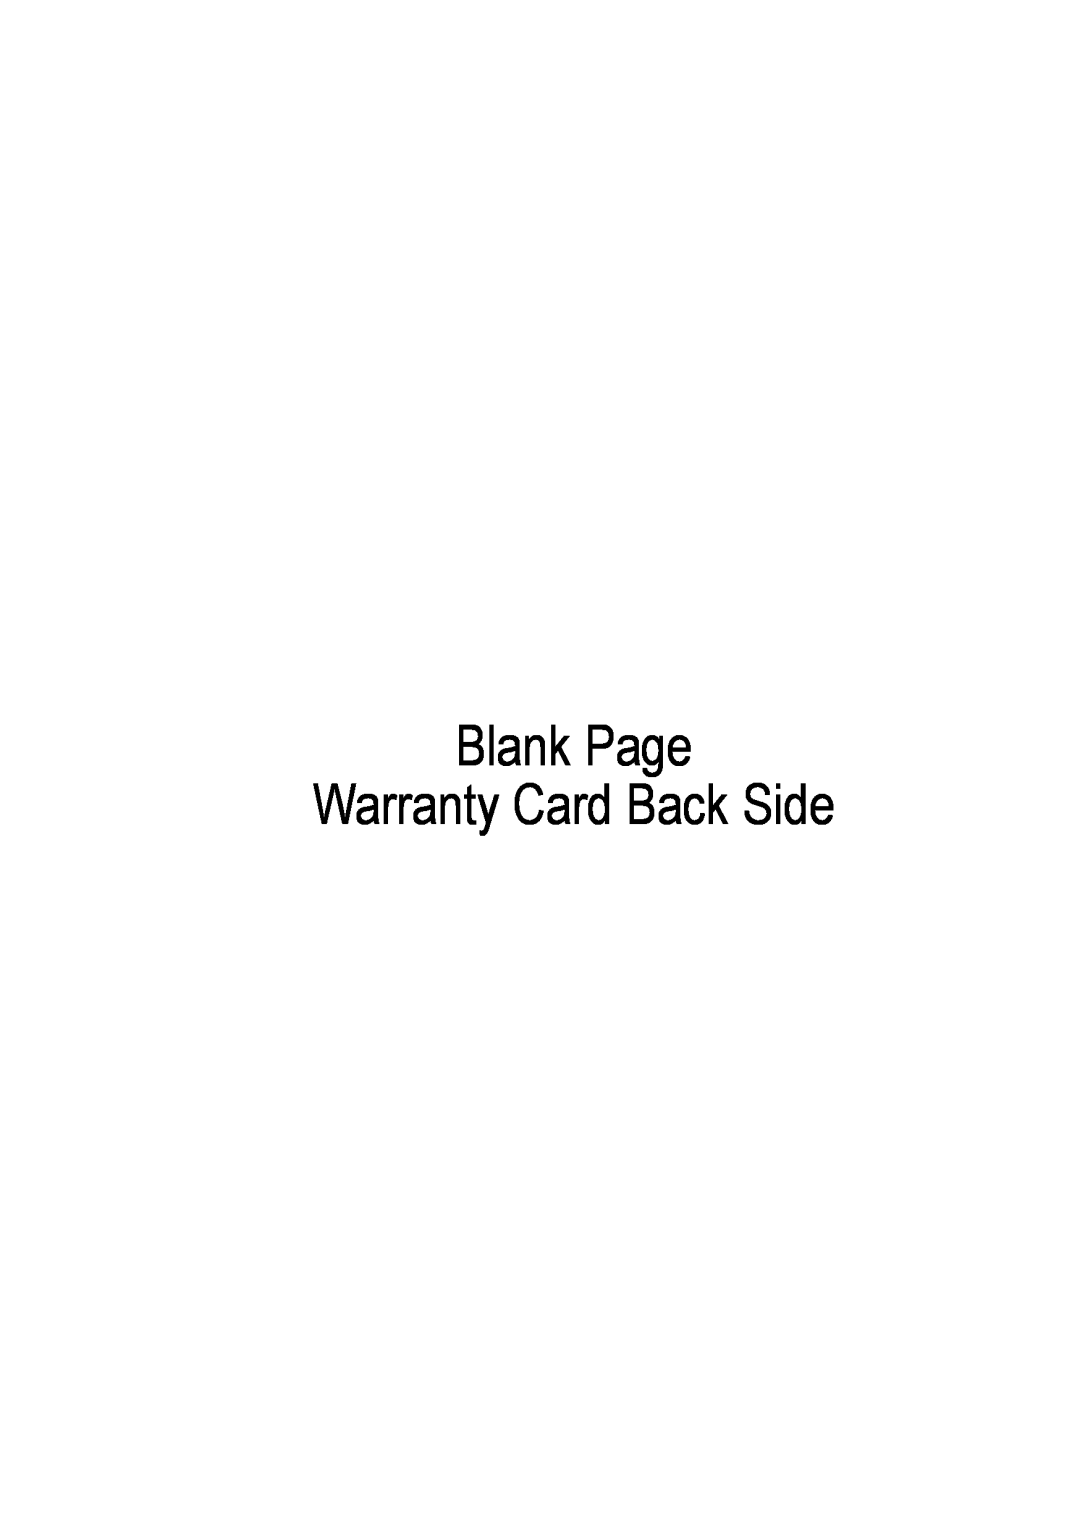 Black & Decker FC300 manual Blank Page Warranty Card Back Side 